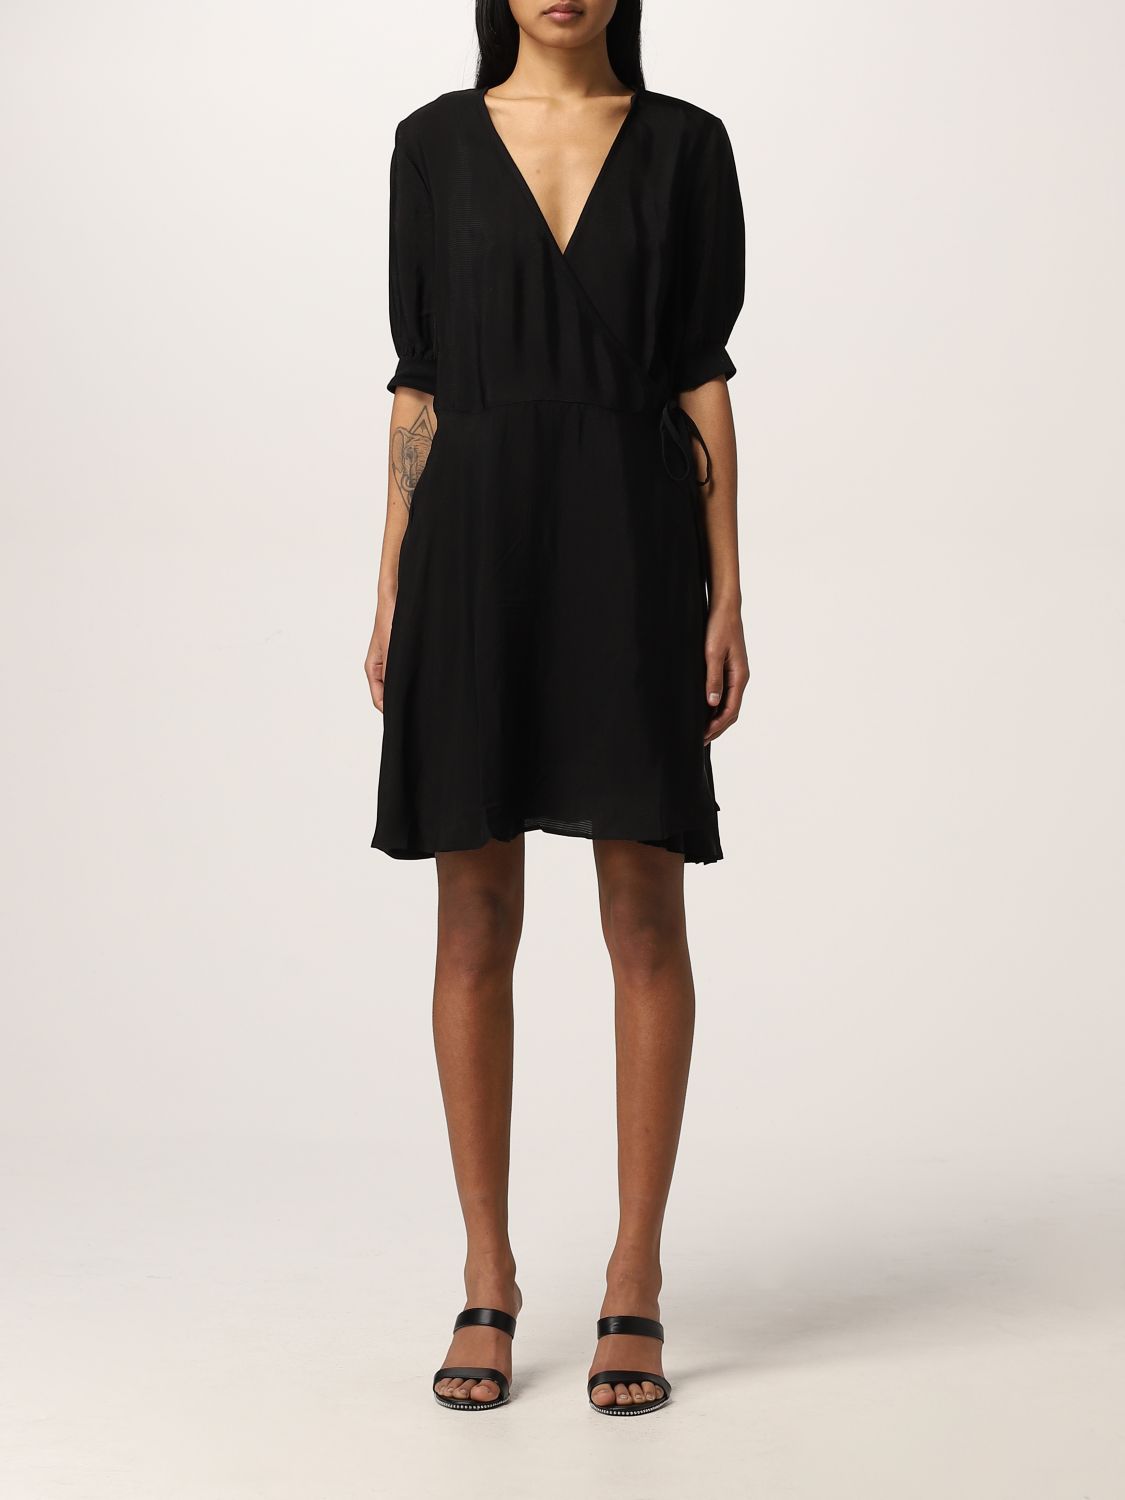 ARMANI EXCHANGE: dress for woman - Black | Armani Exchange dress ...